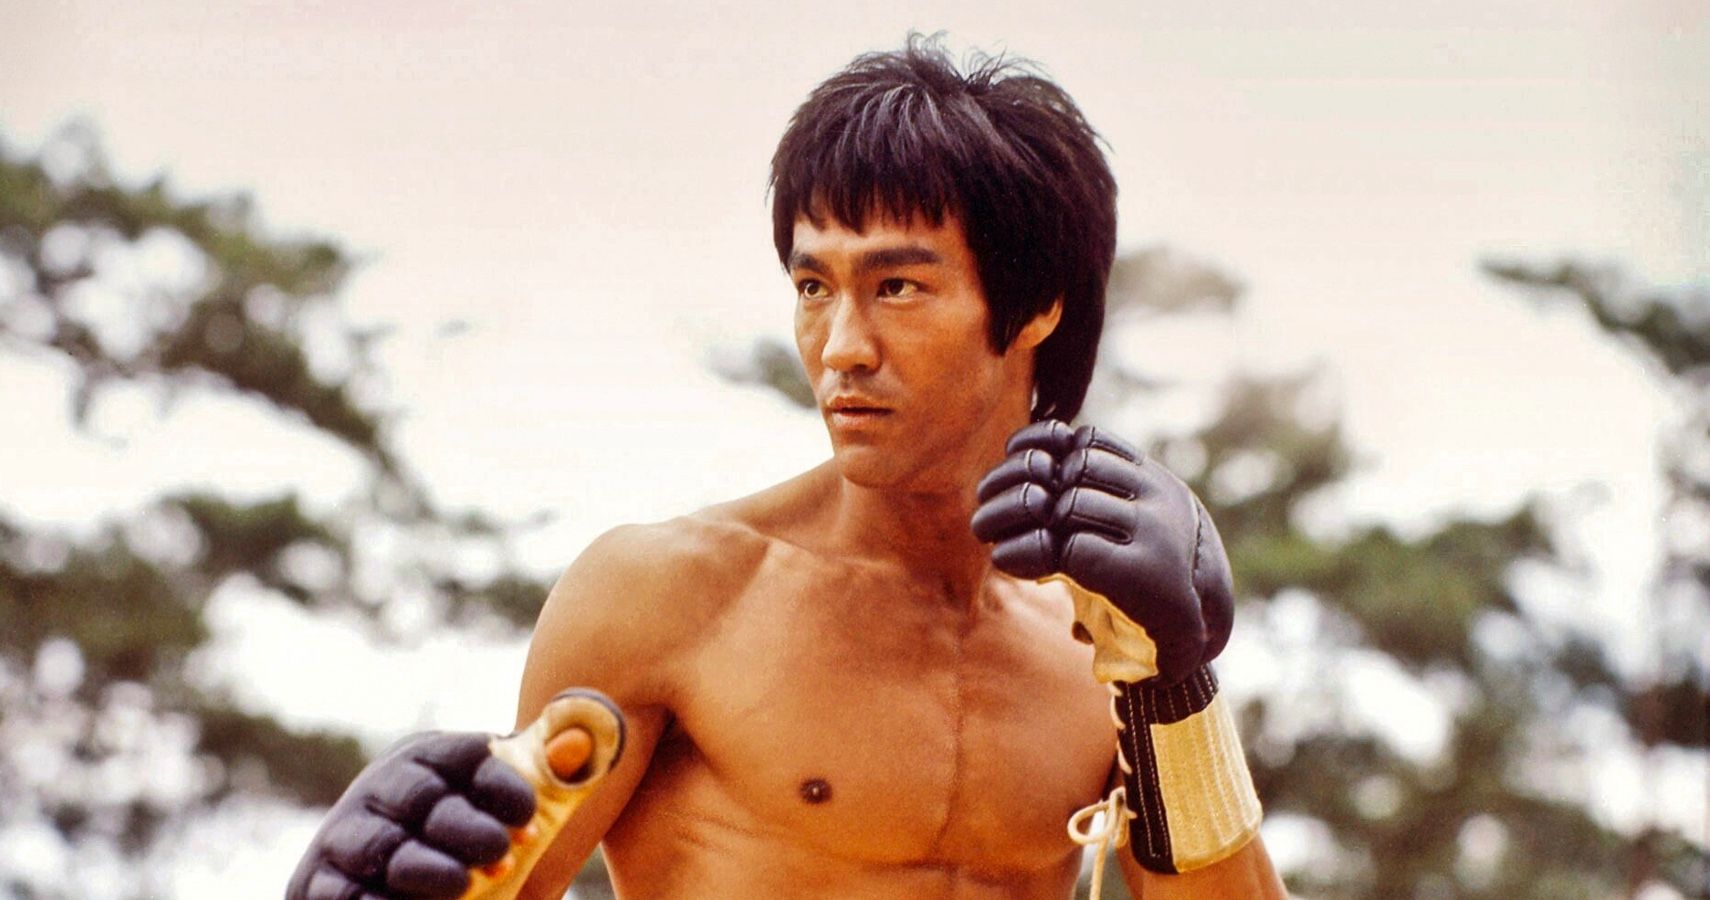 Bruce Lee cobrava US $ 275 / hora pela mensalidade privada e estava na década de 60